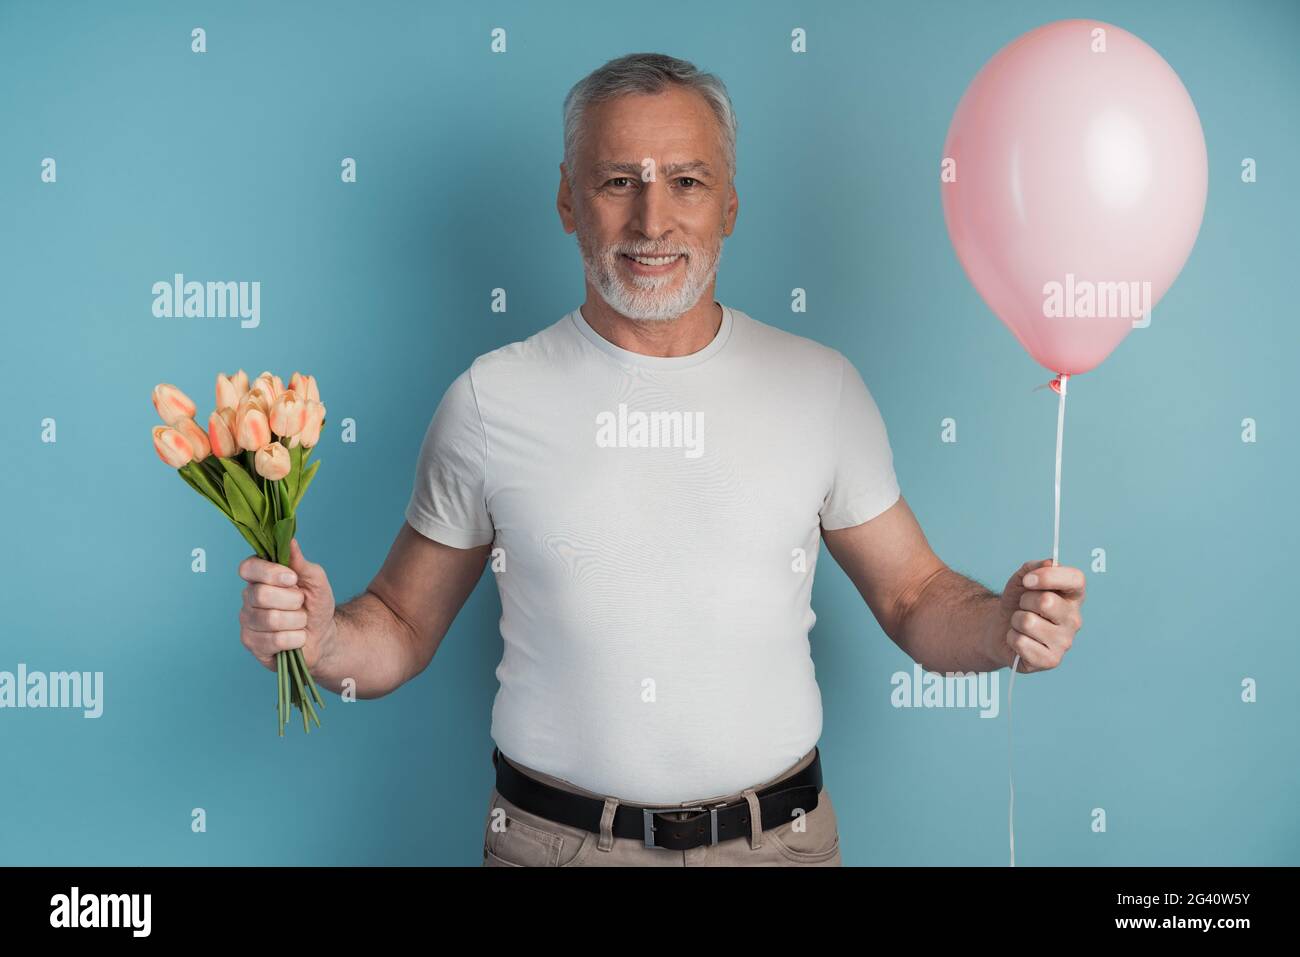 Gallante, l'uomo anziano tiene i fiori e palloncino rosa in mano. Uomo sorridente con capelli grigi su sfondo blu, posto per il testo, copia spazio. Foto Stock